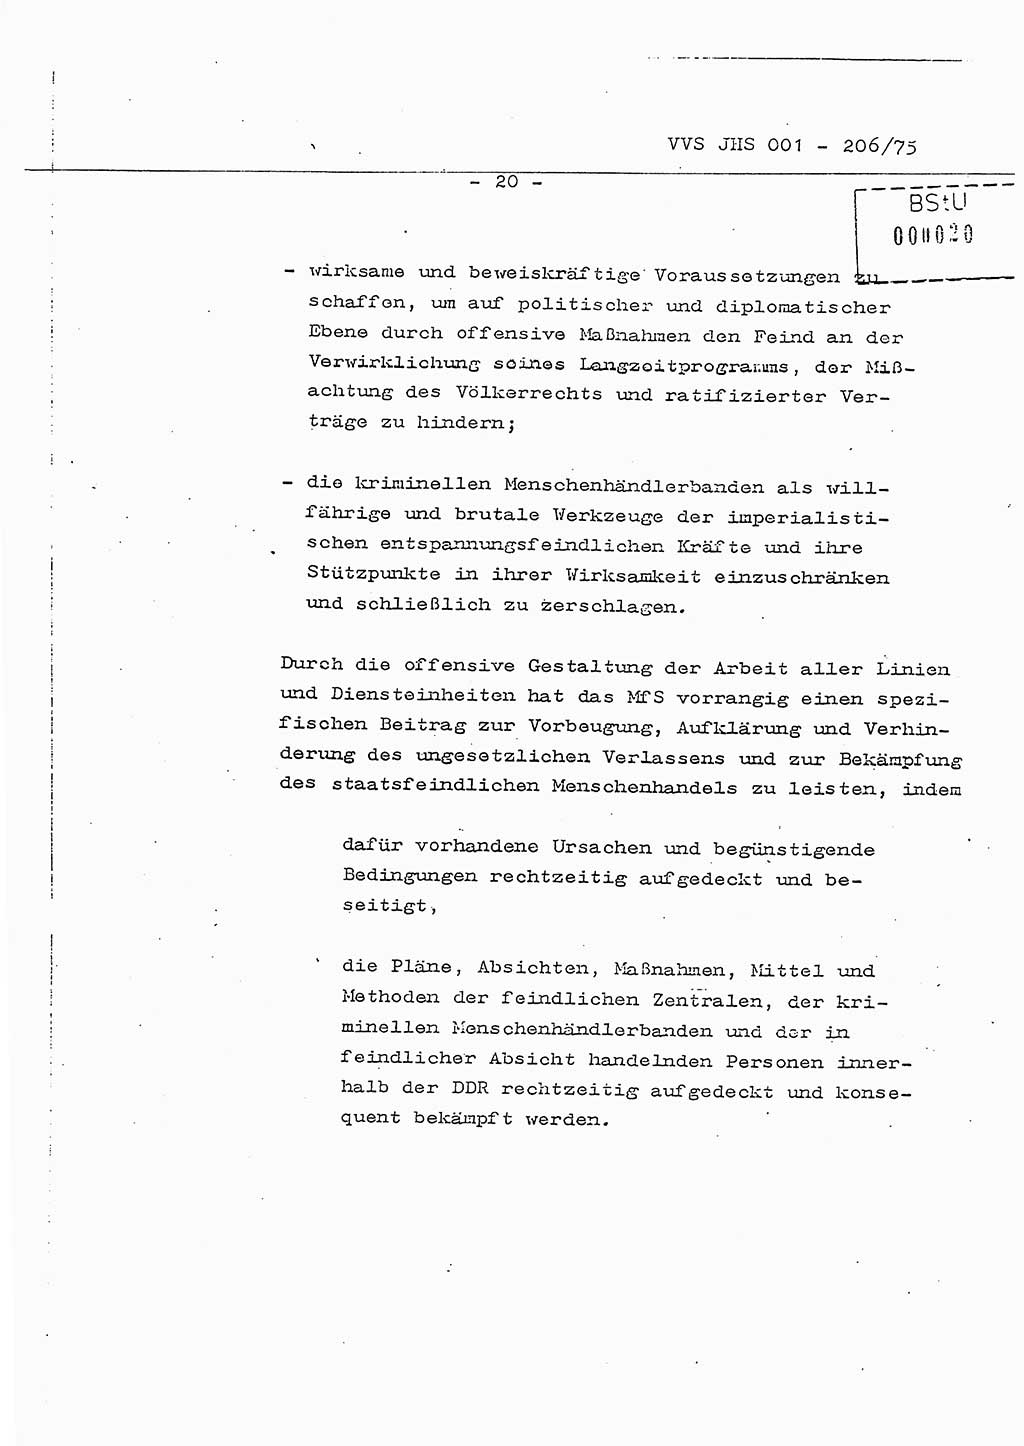 Dissertation Generalmajor Manfred Hummitzsch (Leiter der BV Leipzig), Generalmajor Heinz Fiedler (HA Ⅵ), Oberst Rolf Fister (HA Ⅸ), Ministerium für Staatssicherheit (MfS) [Deutsche Demokratische Republik (DDR)], Juristische Hochschule (JHS), Vertrauliche Verschlußsache (VVS) 001-206/75, Potsdam 1975, Seite 20 (Diss. MfS DDR JHS VVS 001-206/75 1975, S. 20)